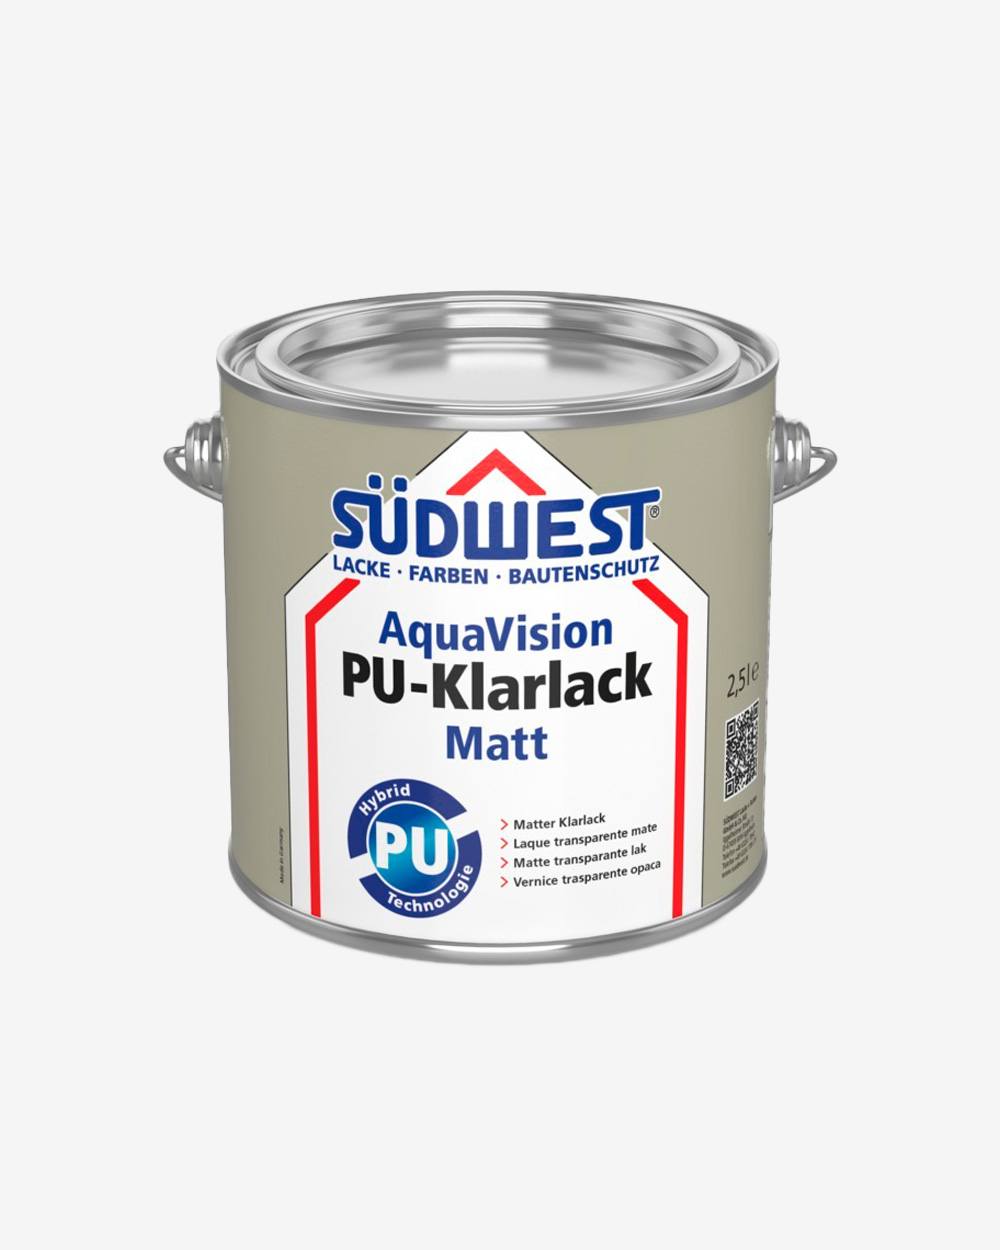 Se Südwest AquaVision PU-Klarlack Matt - 0,75 L hos Picment.dk